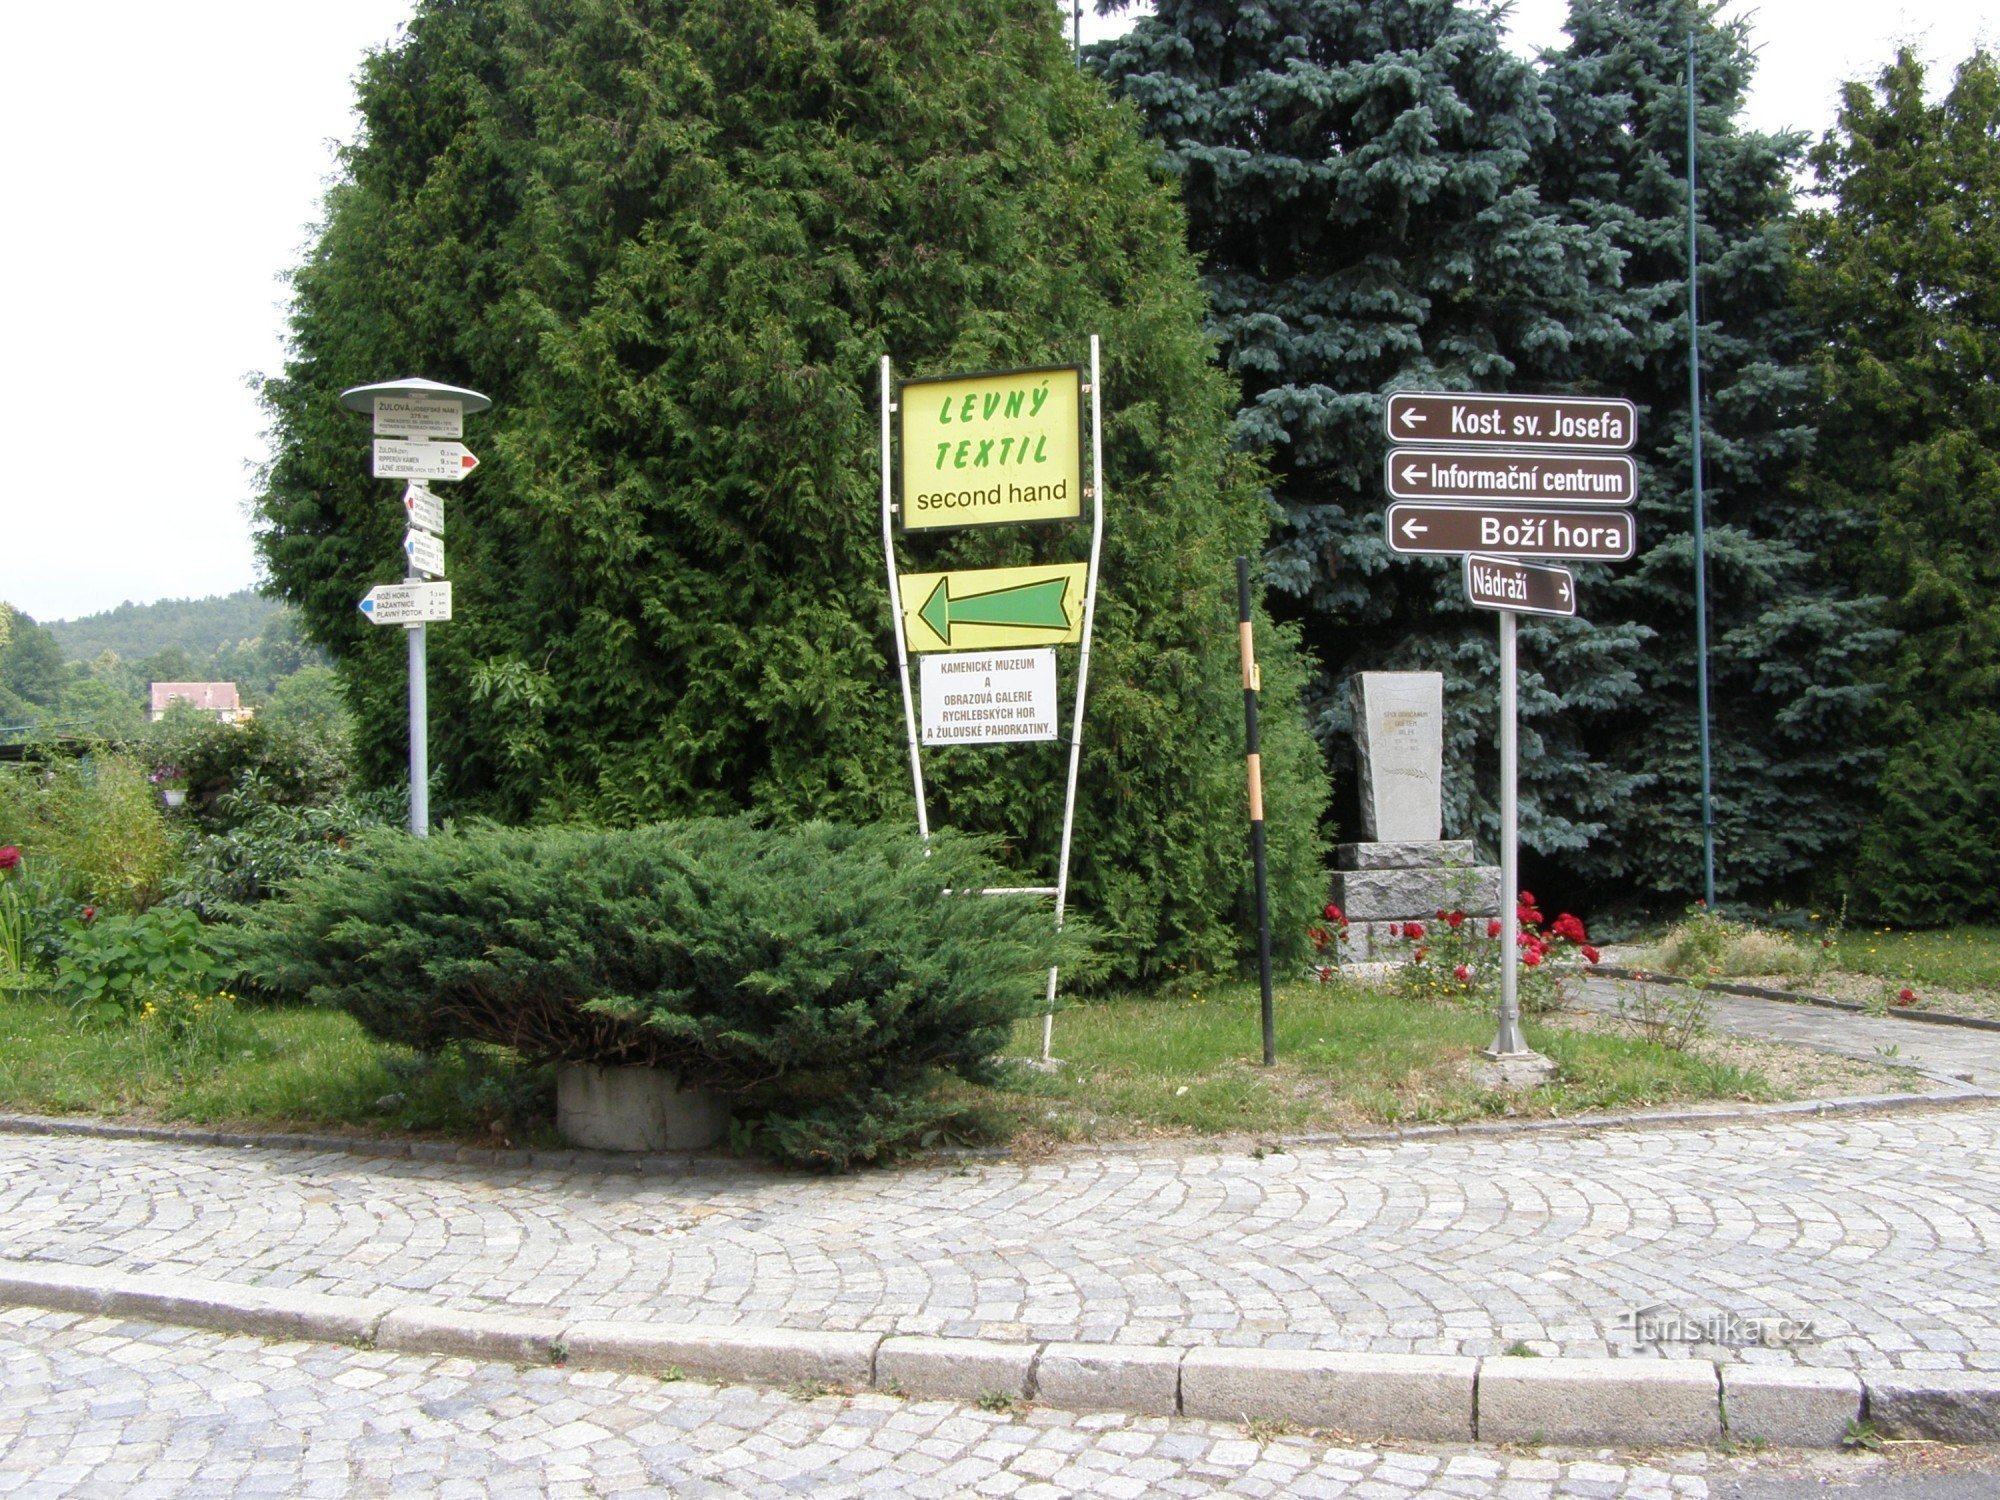 τουριστικό σταυροδρόμι Žulová - Josefské náměstí